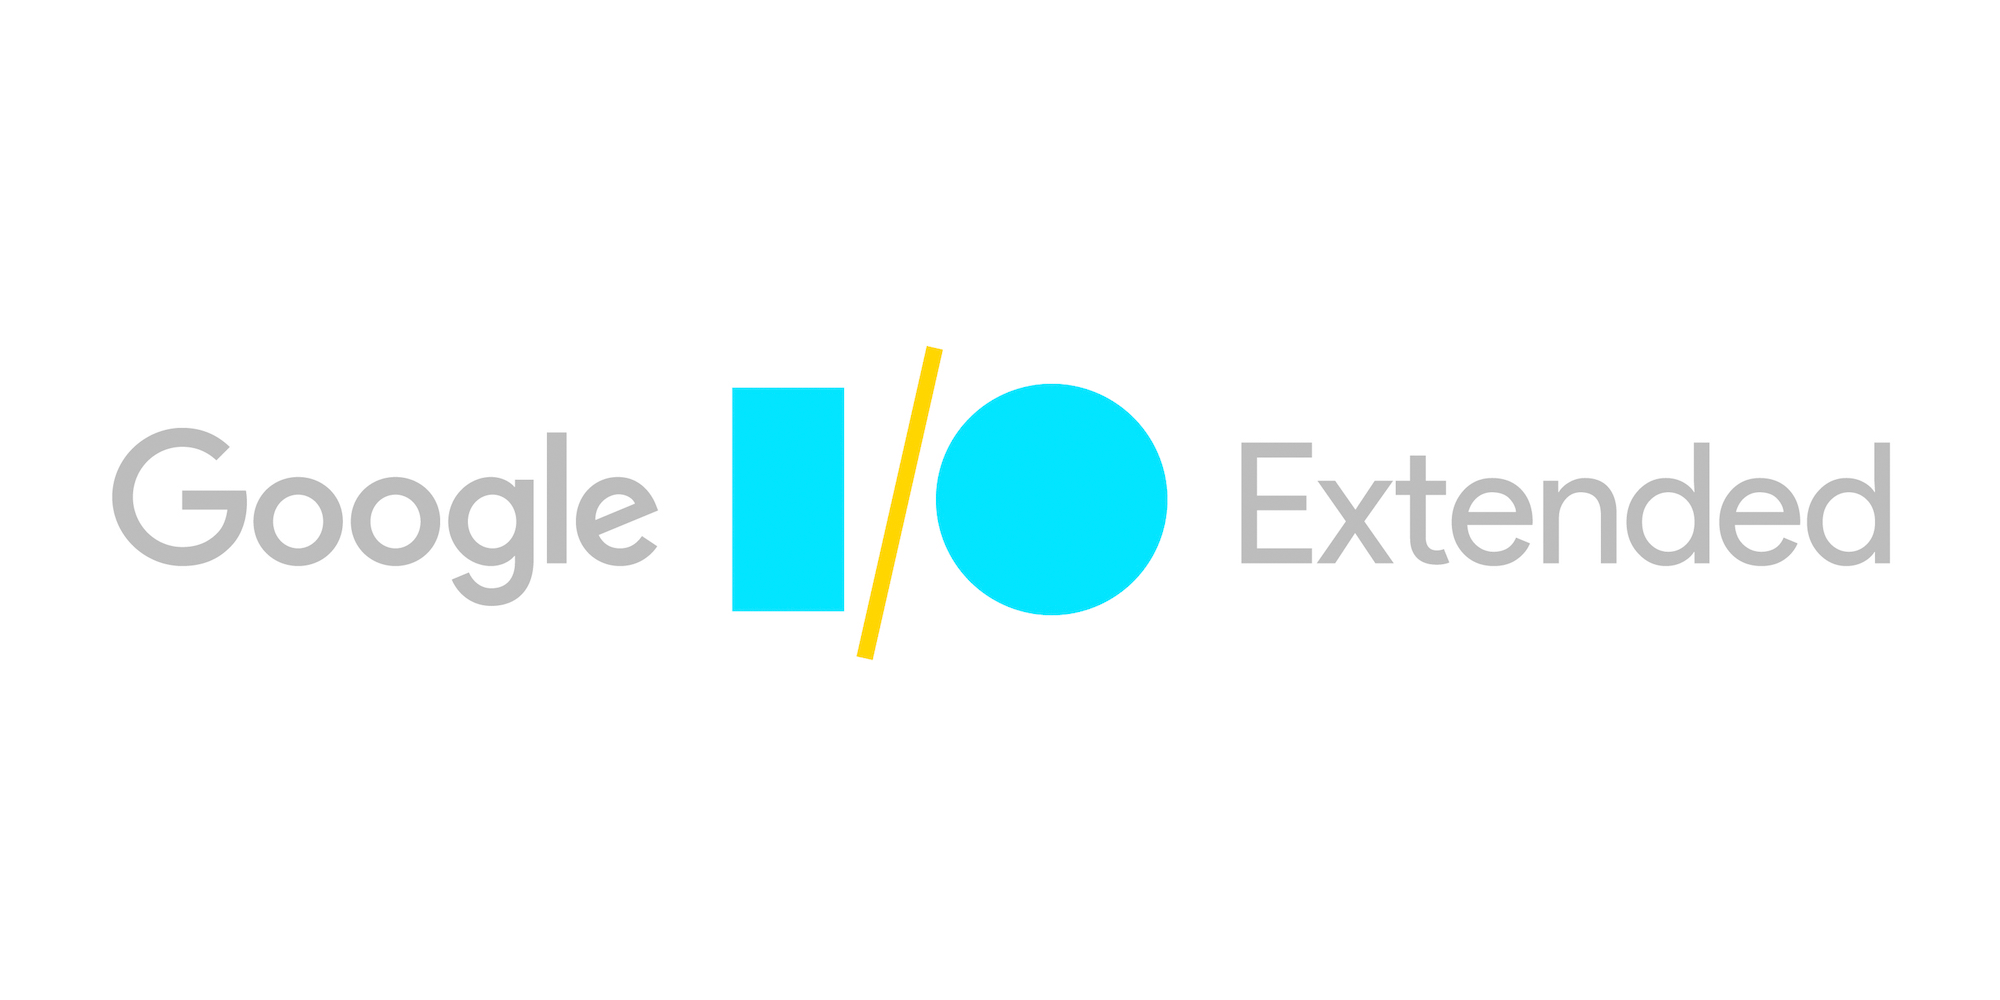 Google I/O Extended 2017